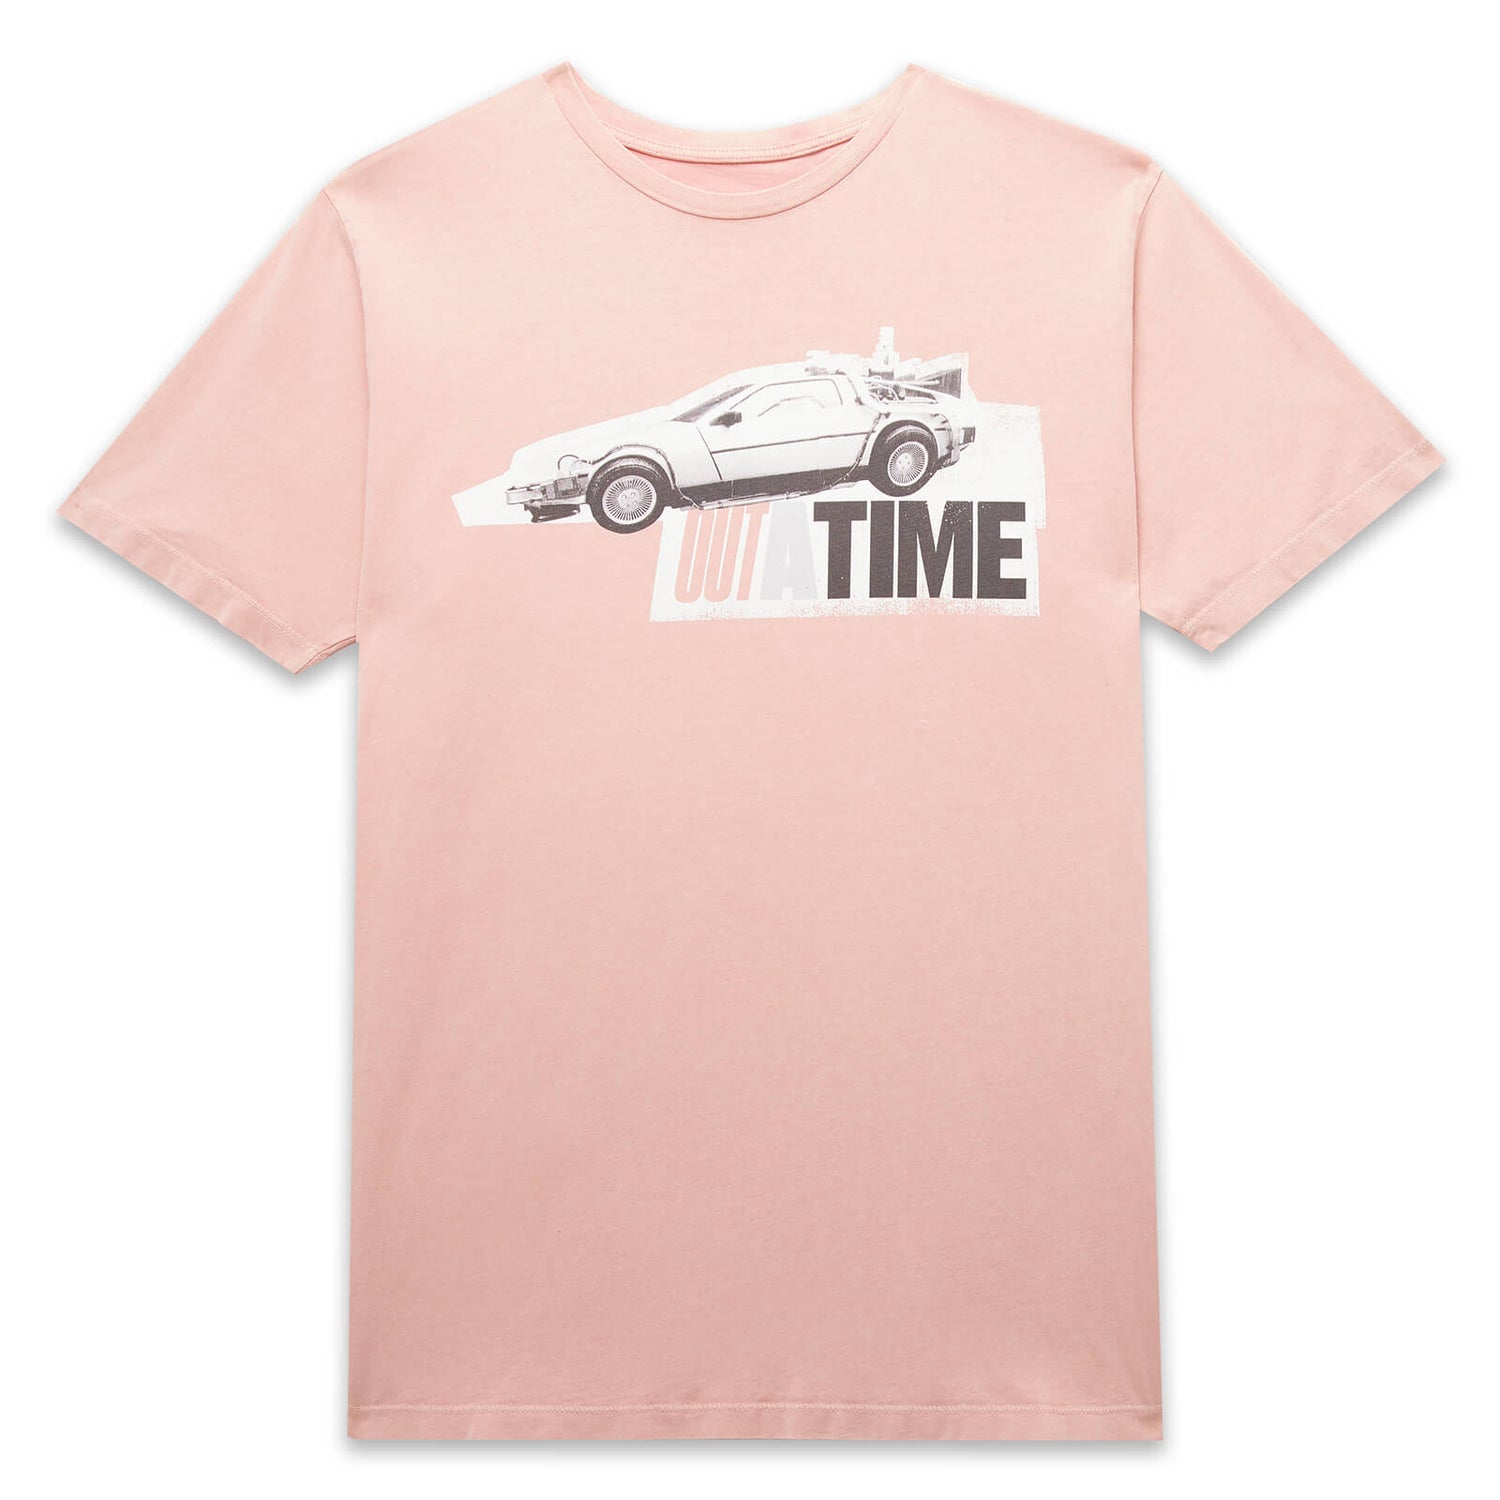 Camiseta unisex Back to the Future Outatime - Pink Acid Wash